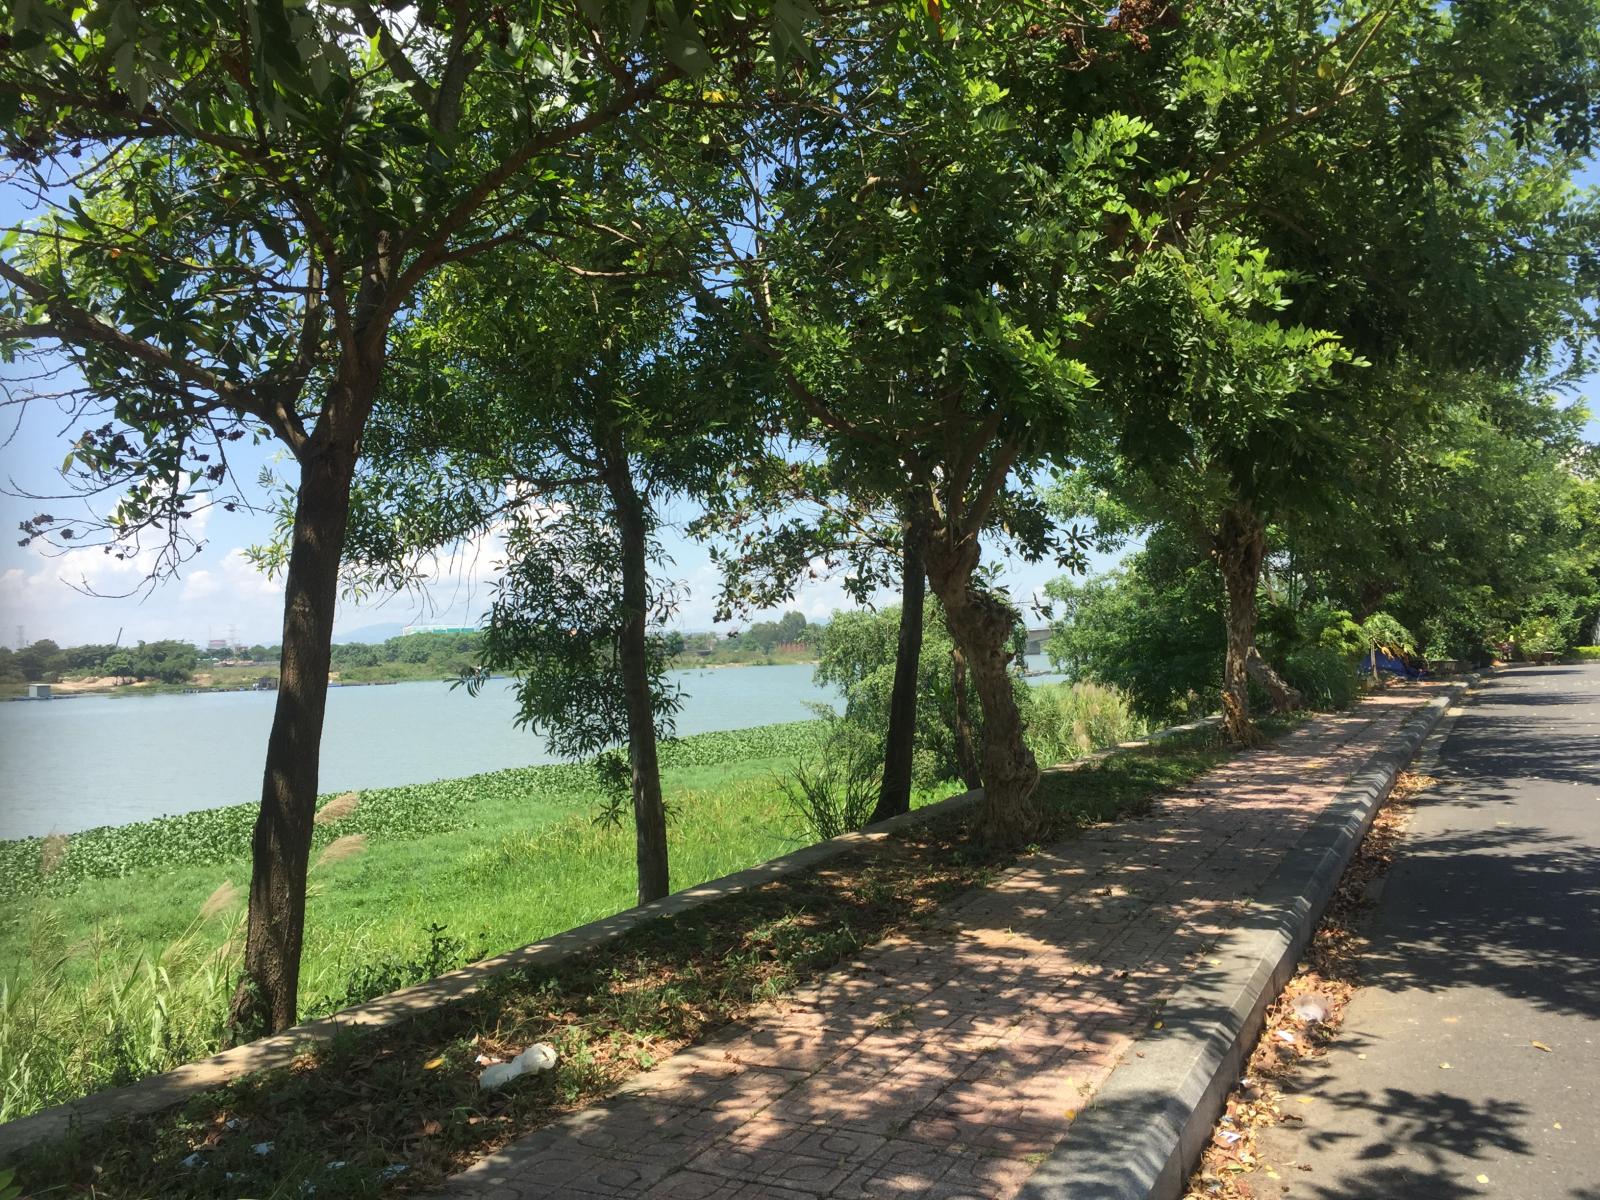 Bán 50 lô Đất biệt thự view sông Cẩm Lệ cuối cùng tại Đà Nẵng giá tốt, số lượng có hạn